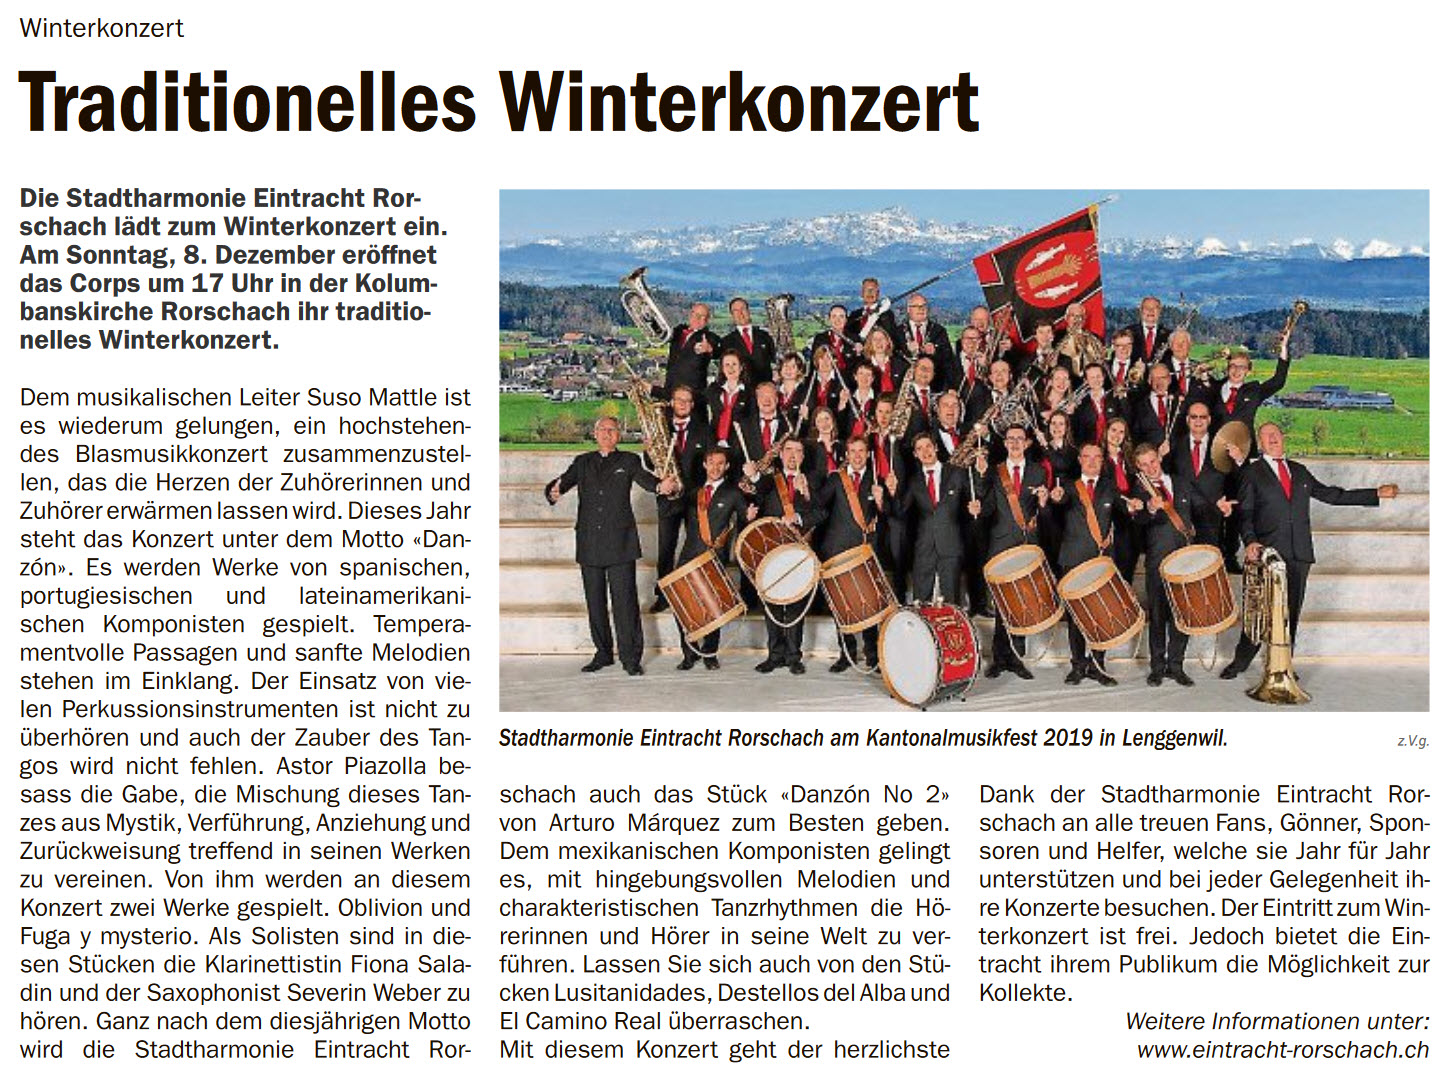 Danzón - Vorschau auf das Winterkonzert der Stadtharmonie Eintracht